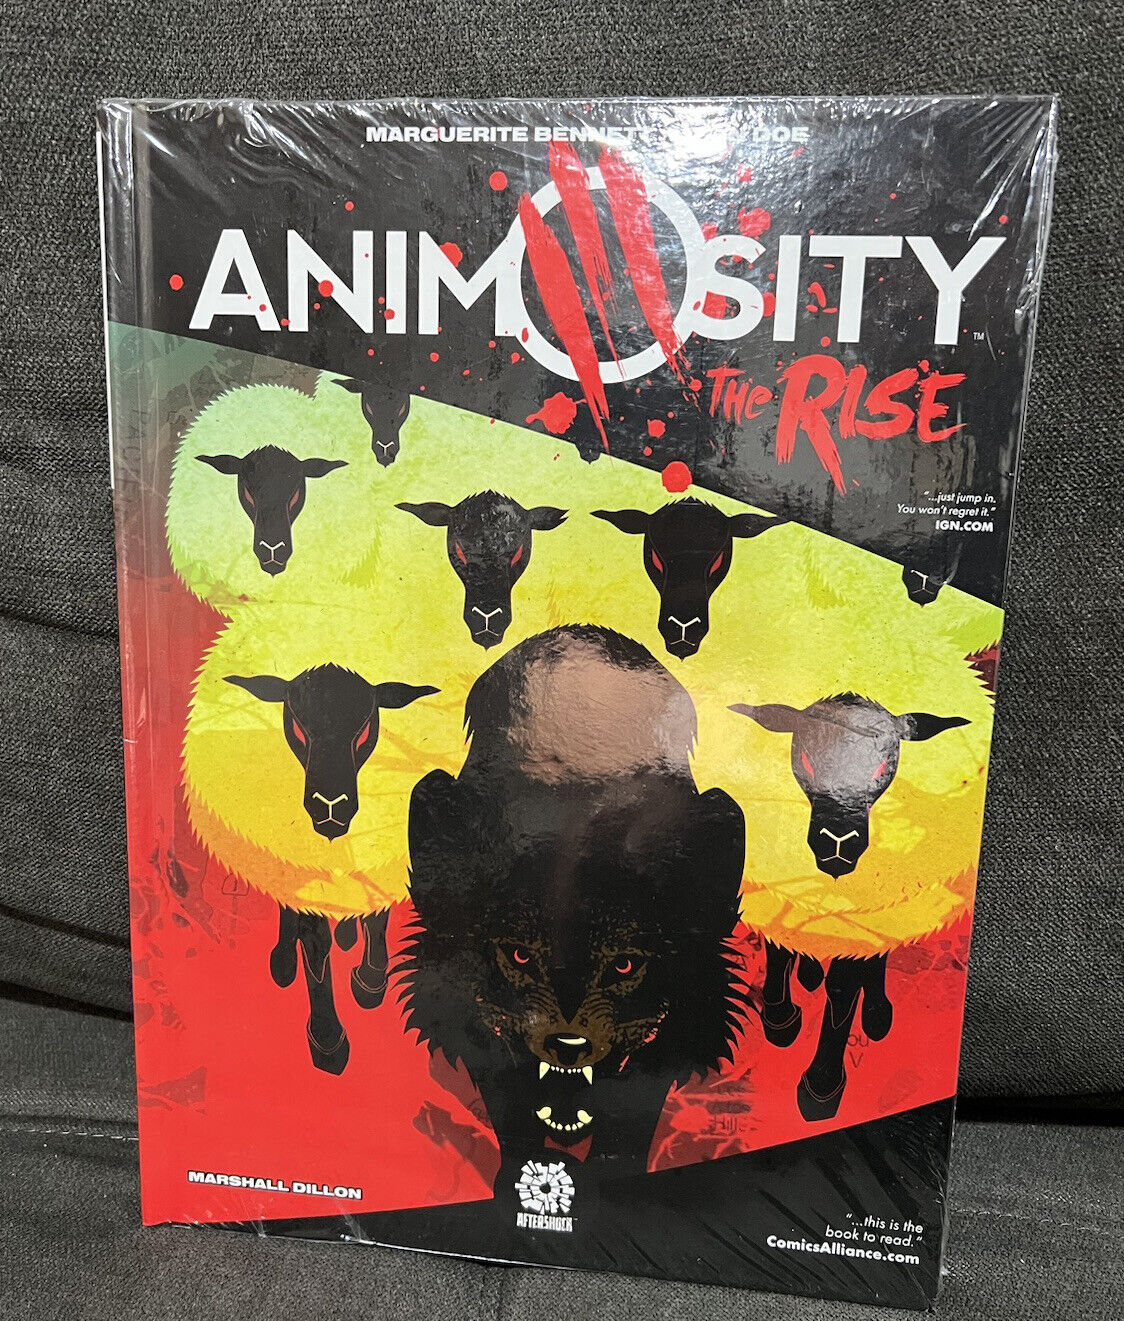 Animosity : The Rise by Marguerite Bennett (Hardcover) New Sealed